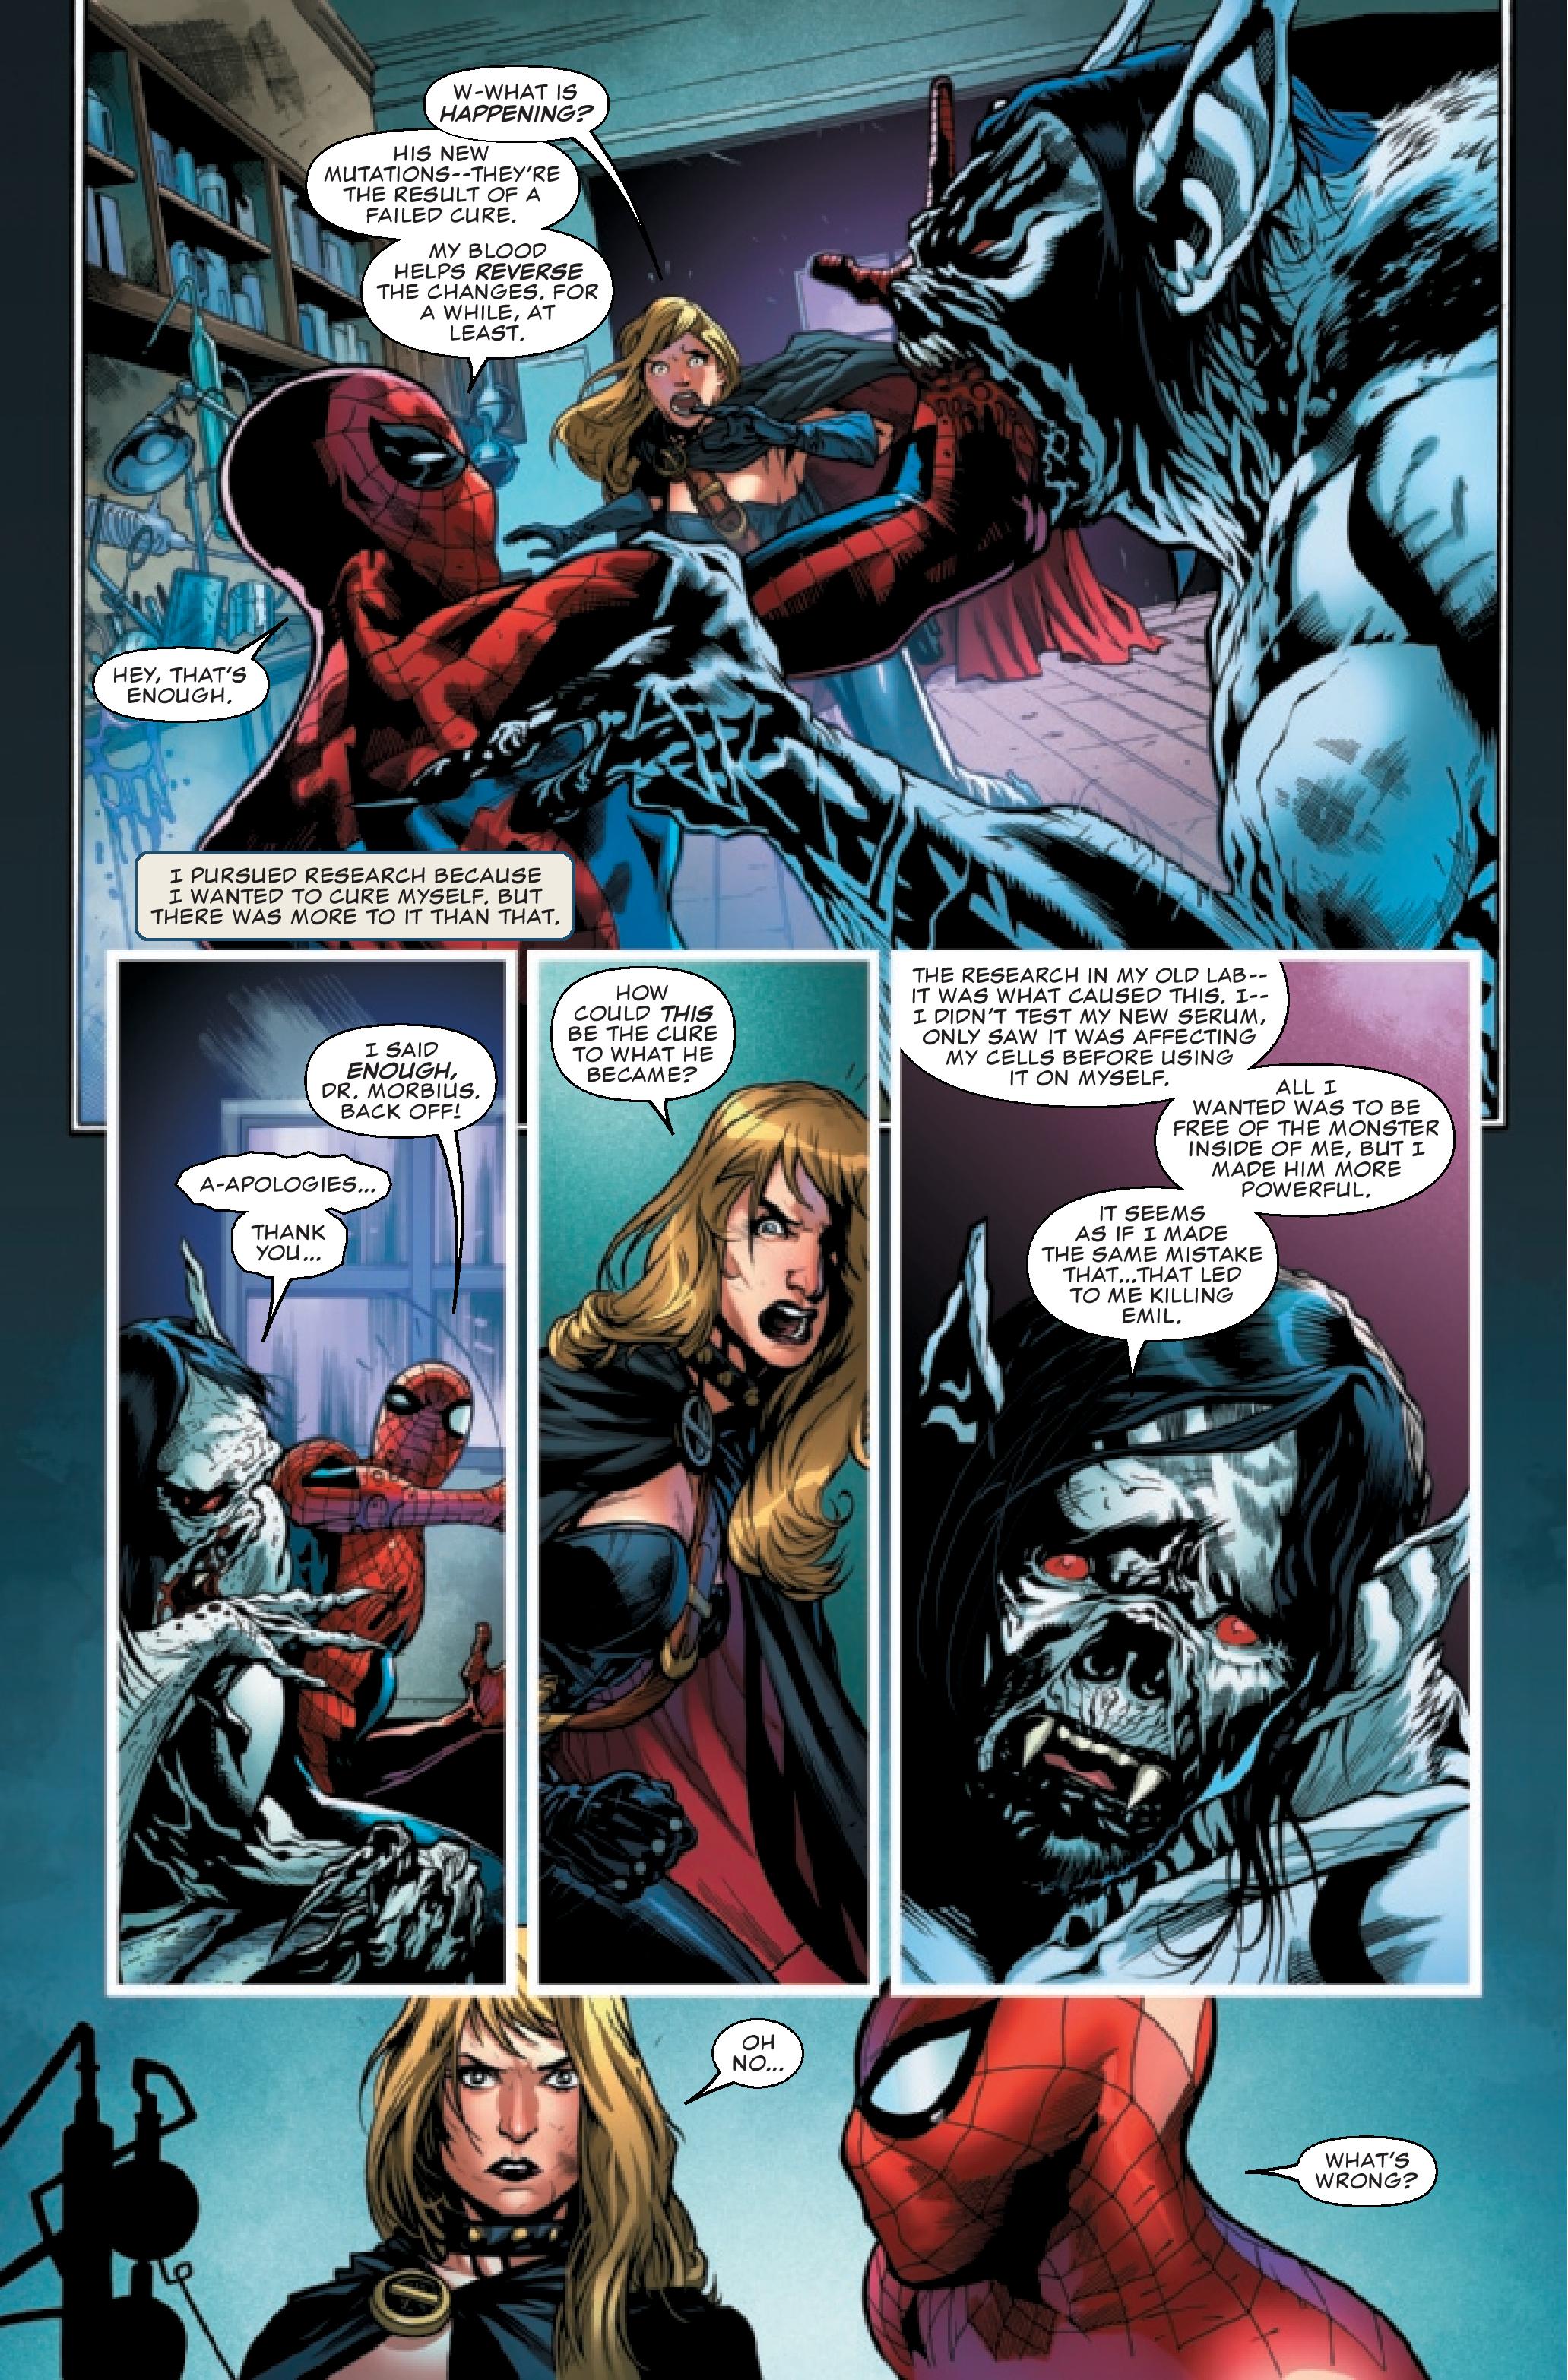 Morbius #5